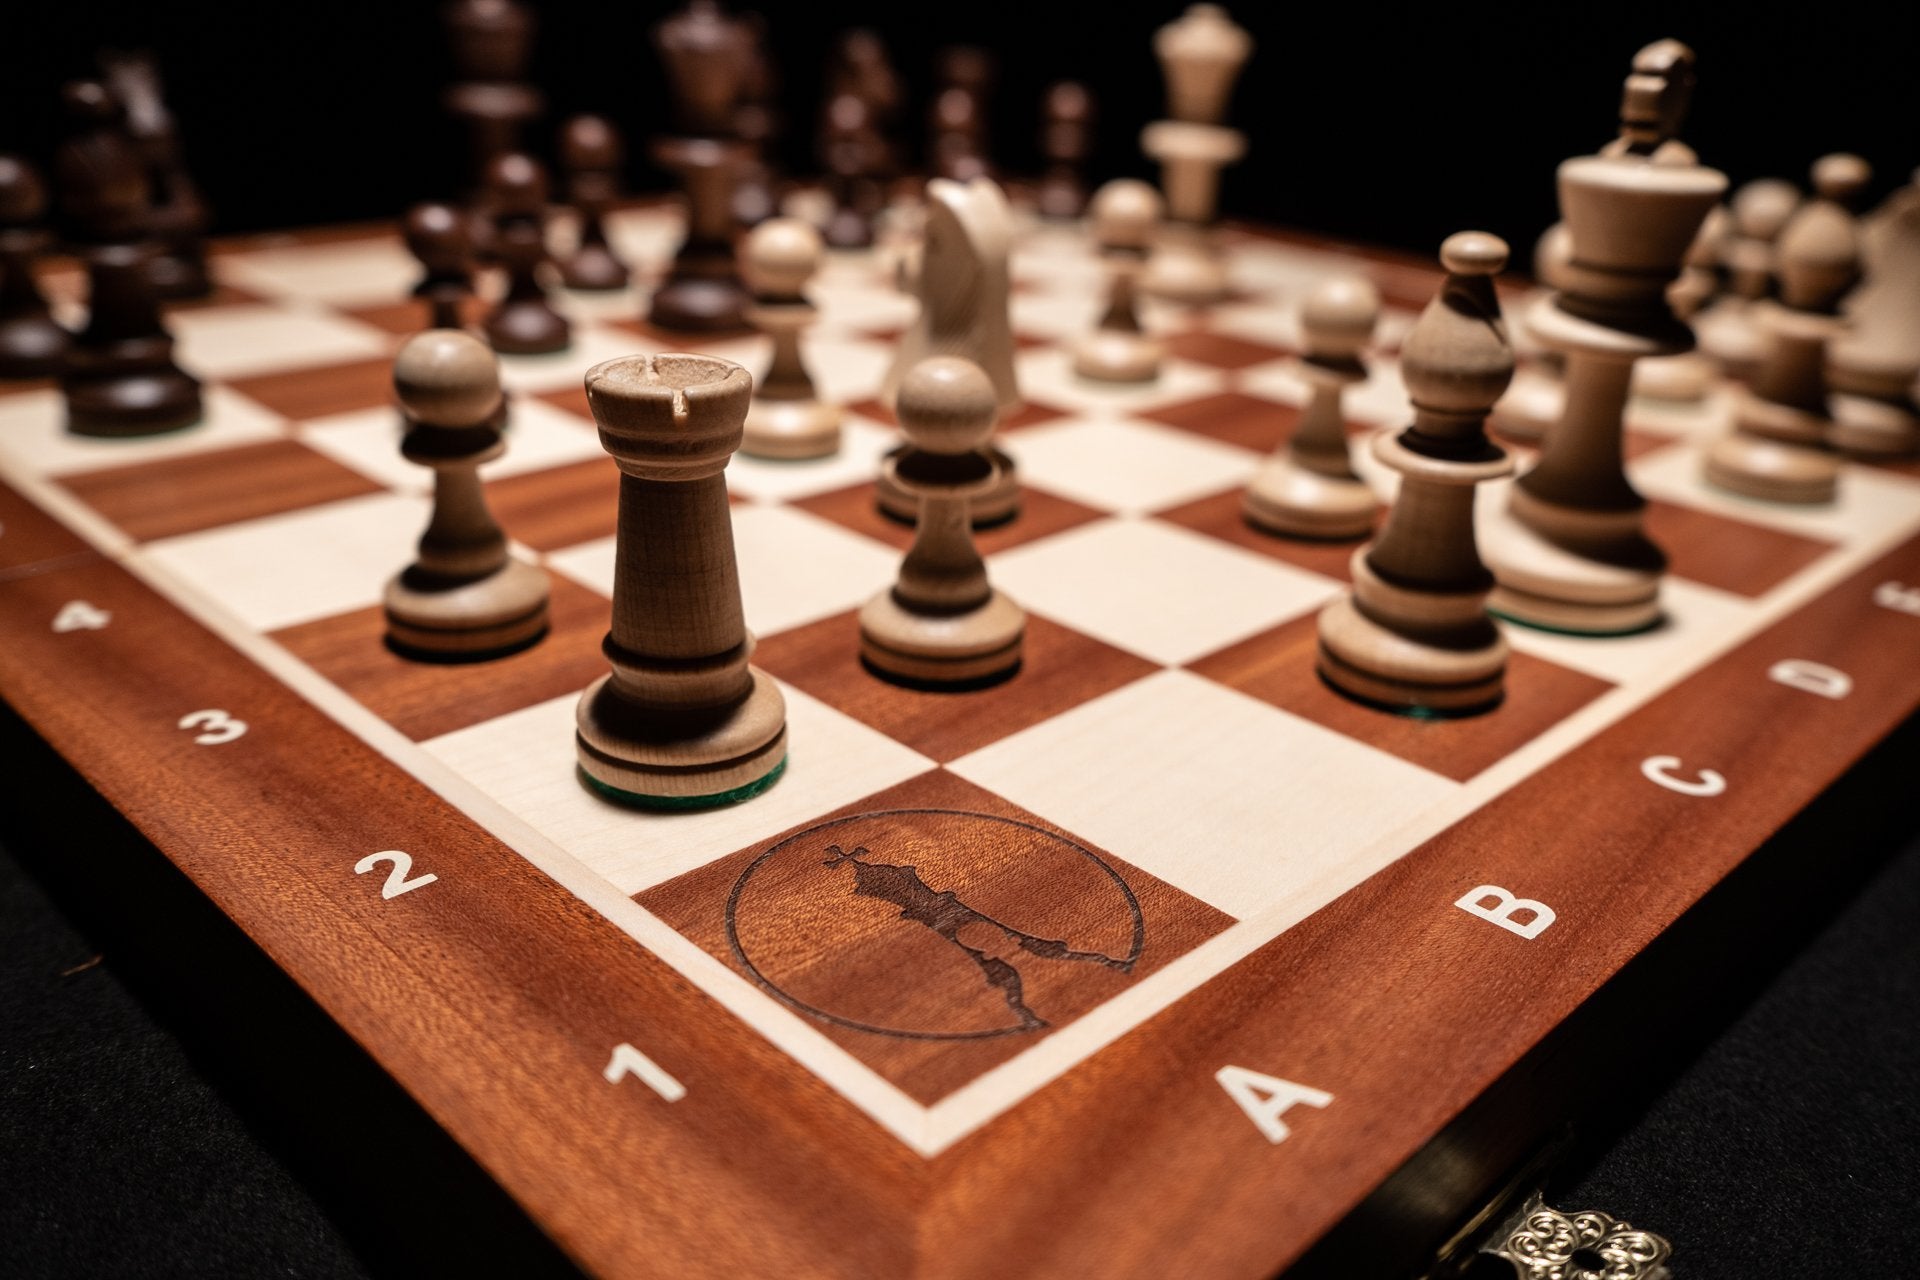 Schach Schachspiel Hölzerne Schachbox Schachbrett Schach-Stück  Aufbewahrungsbox Mit Schublade 16 Slot Eingebautes Speicherfach Für  Schach-Set-Spiel